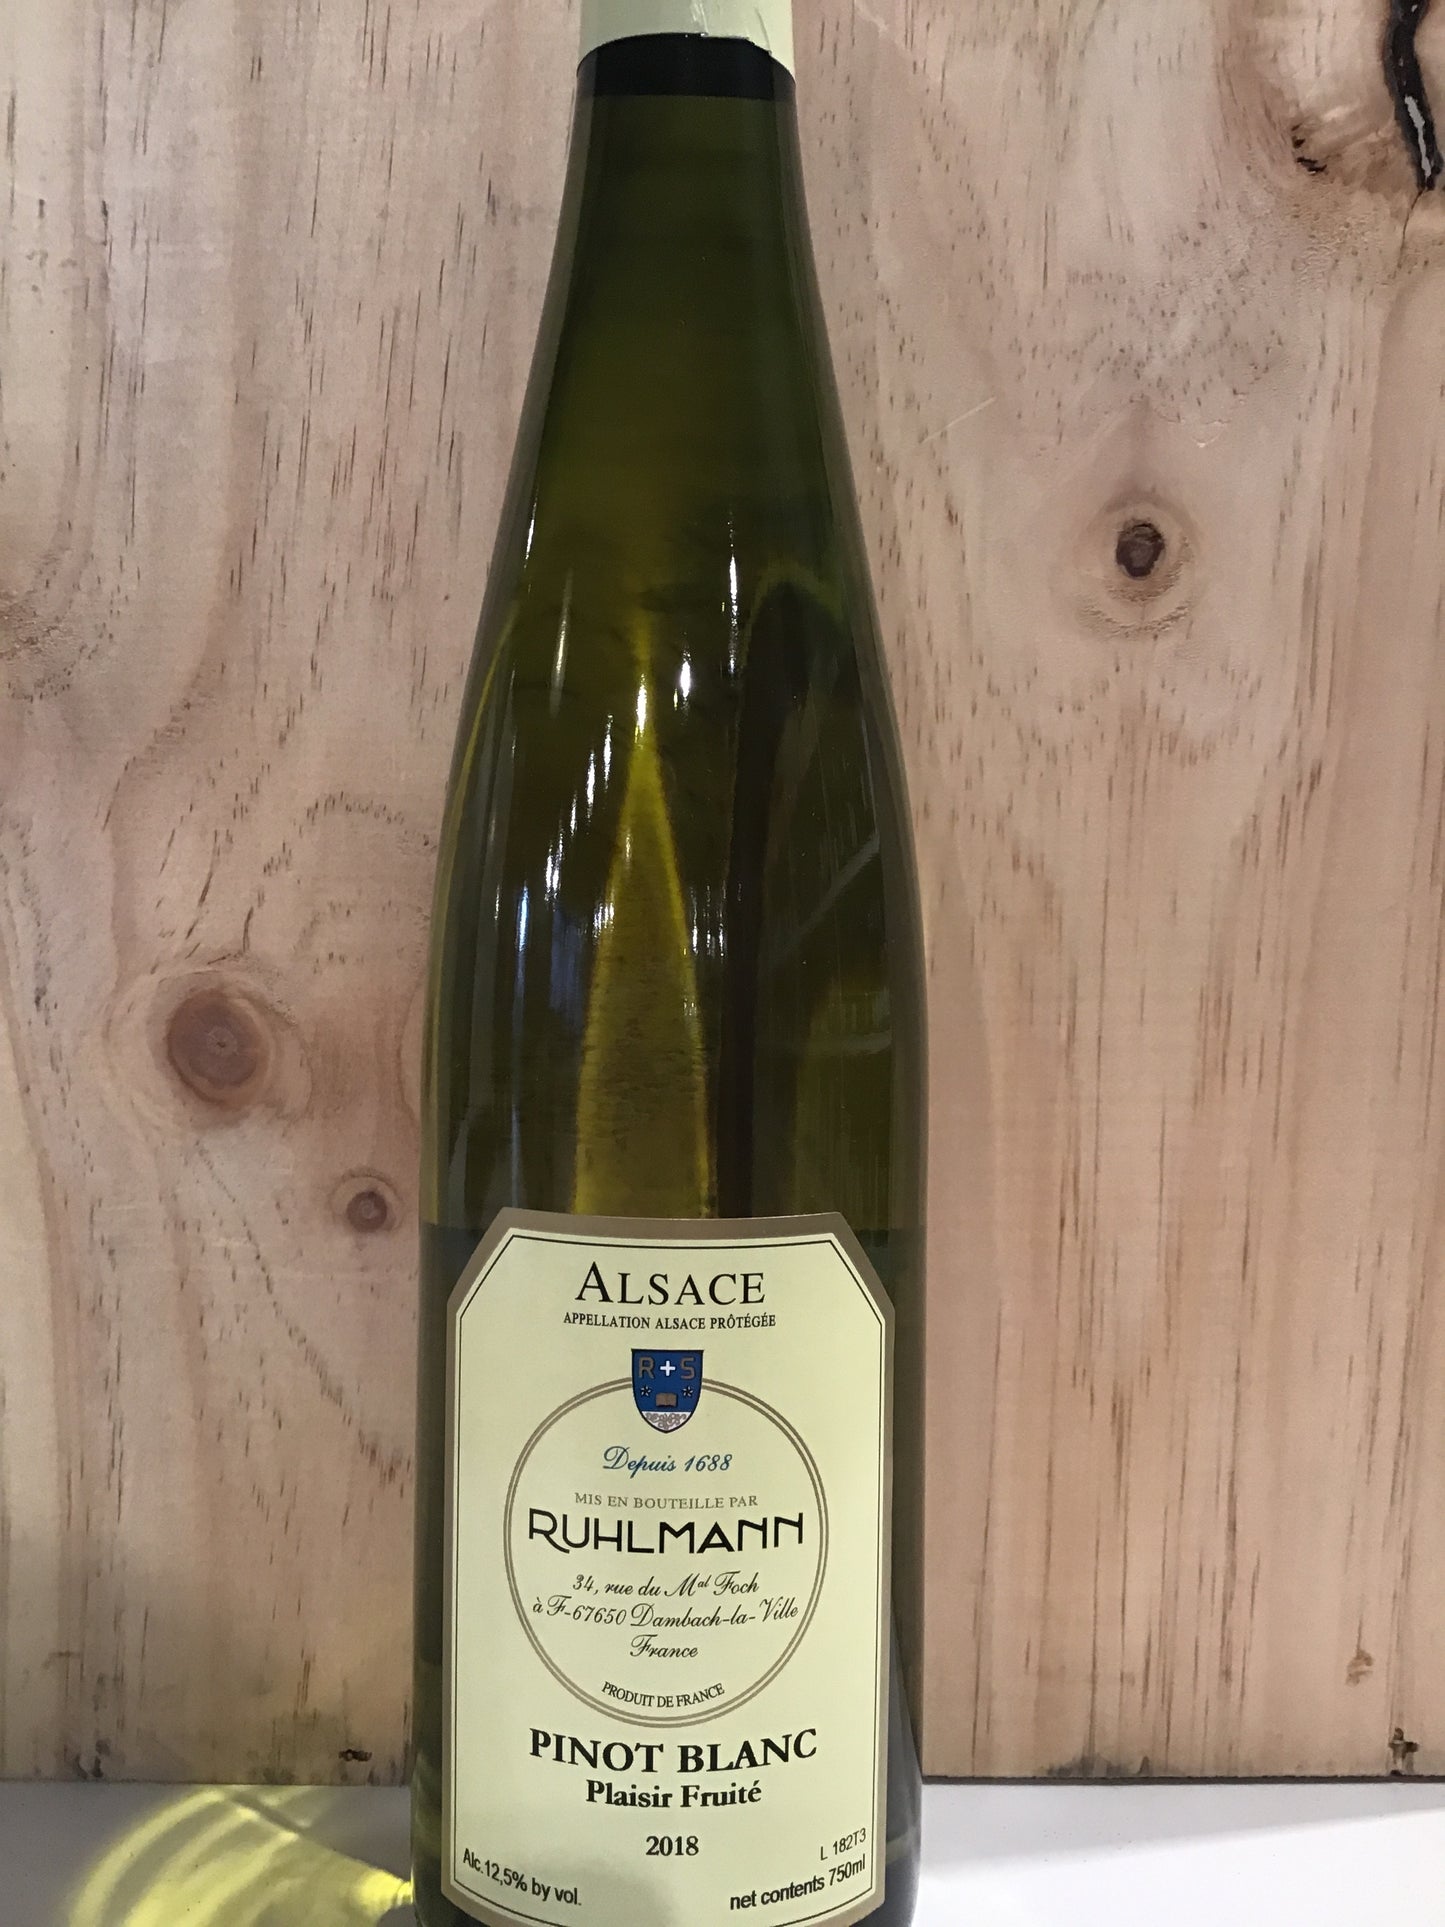 Ruhlmann 'Plaisir Fruite' - Pinot Blanc